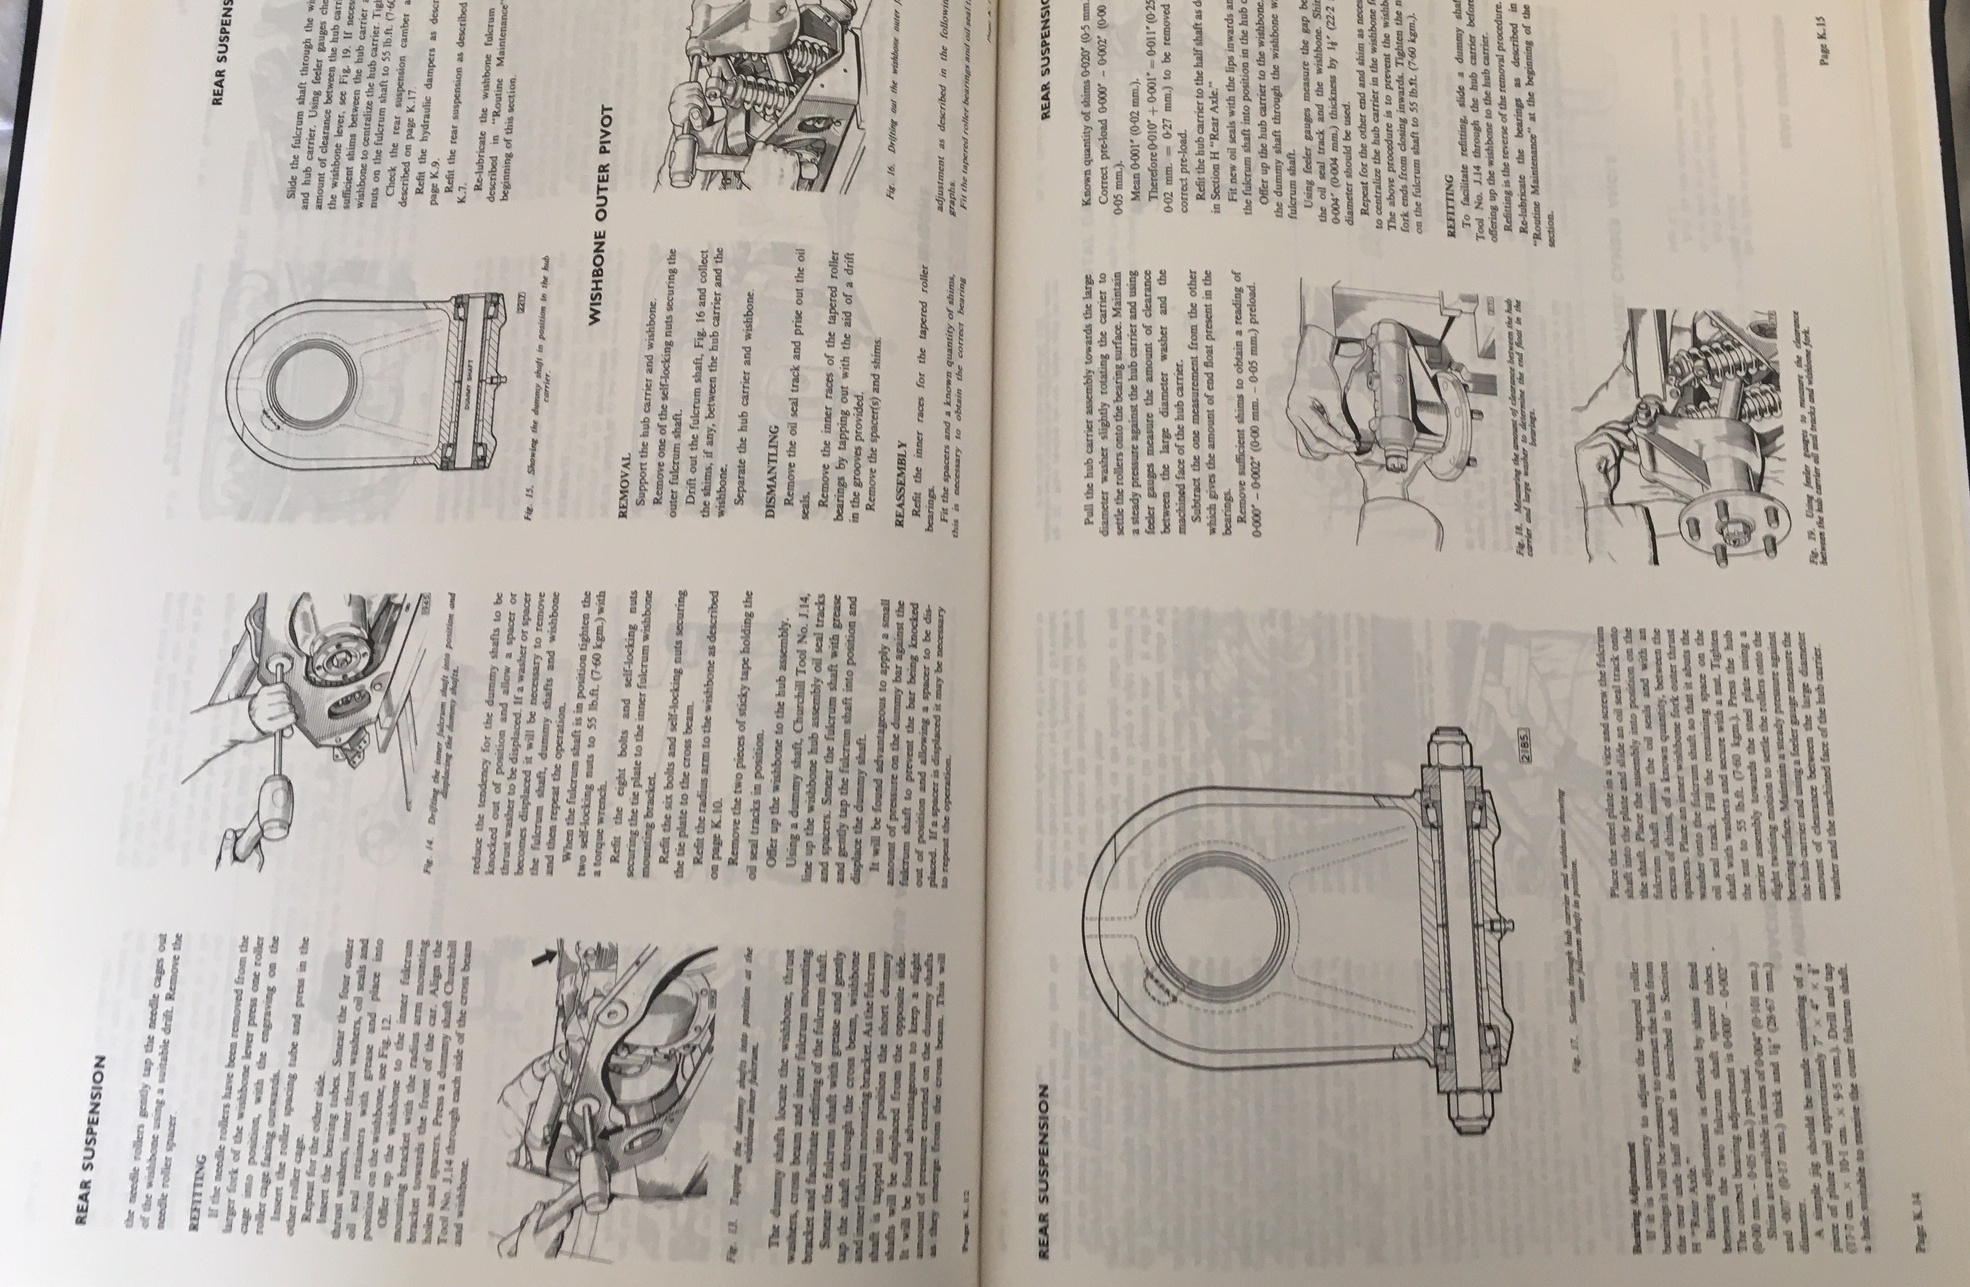 Lot of 2 Vintage Jaguar Car Manuals. - Image 4 of 8